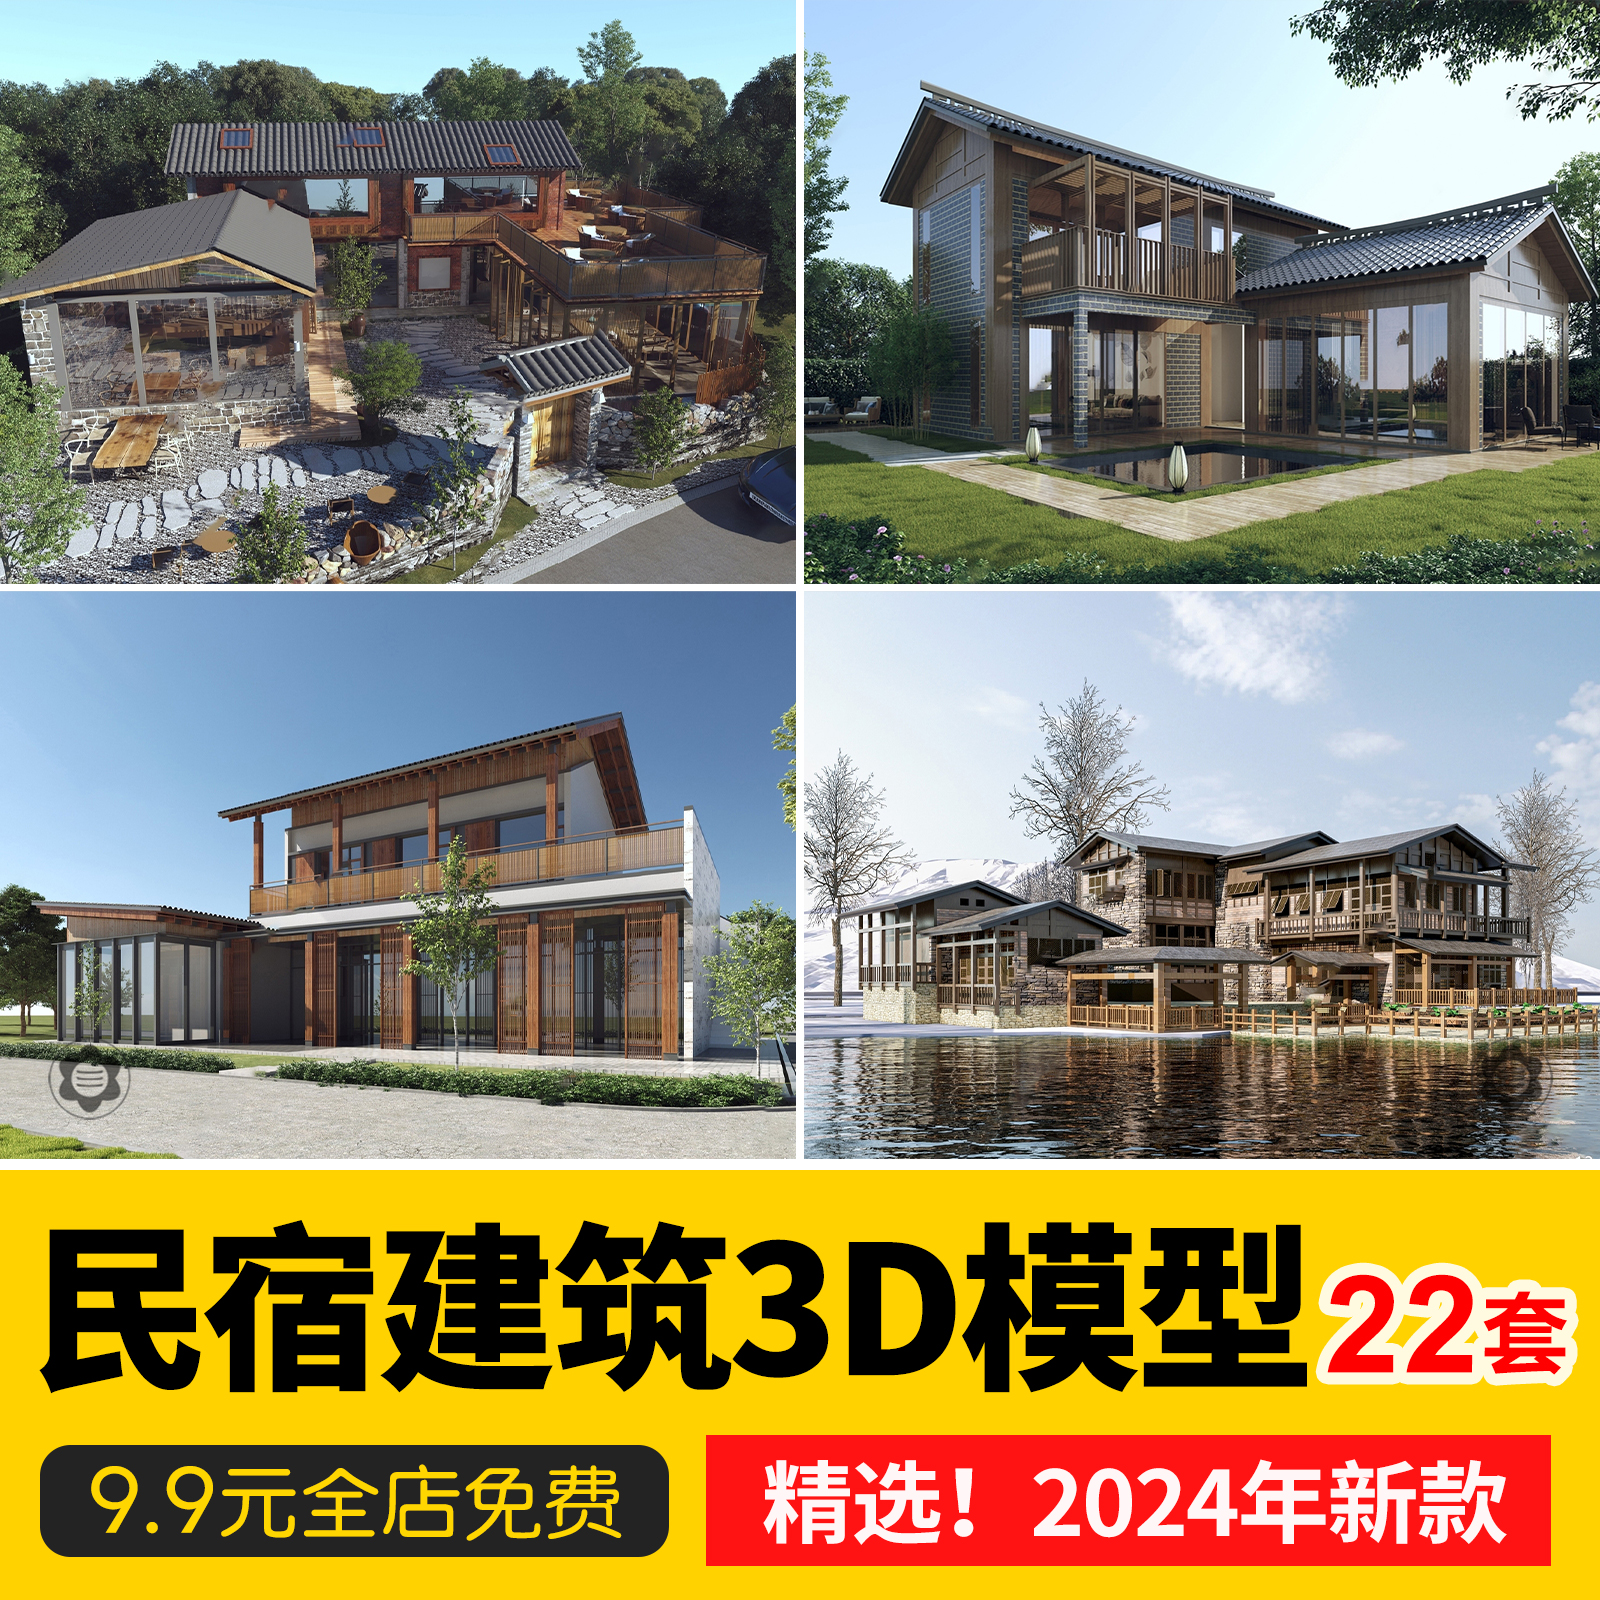 民宿酒店外观建筑度假村农村老房改造新景区美丽乡村3D模型3dmax